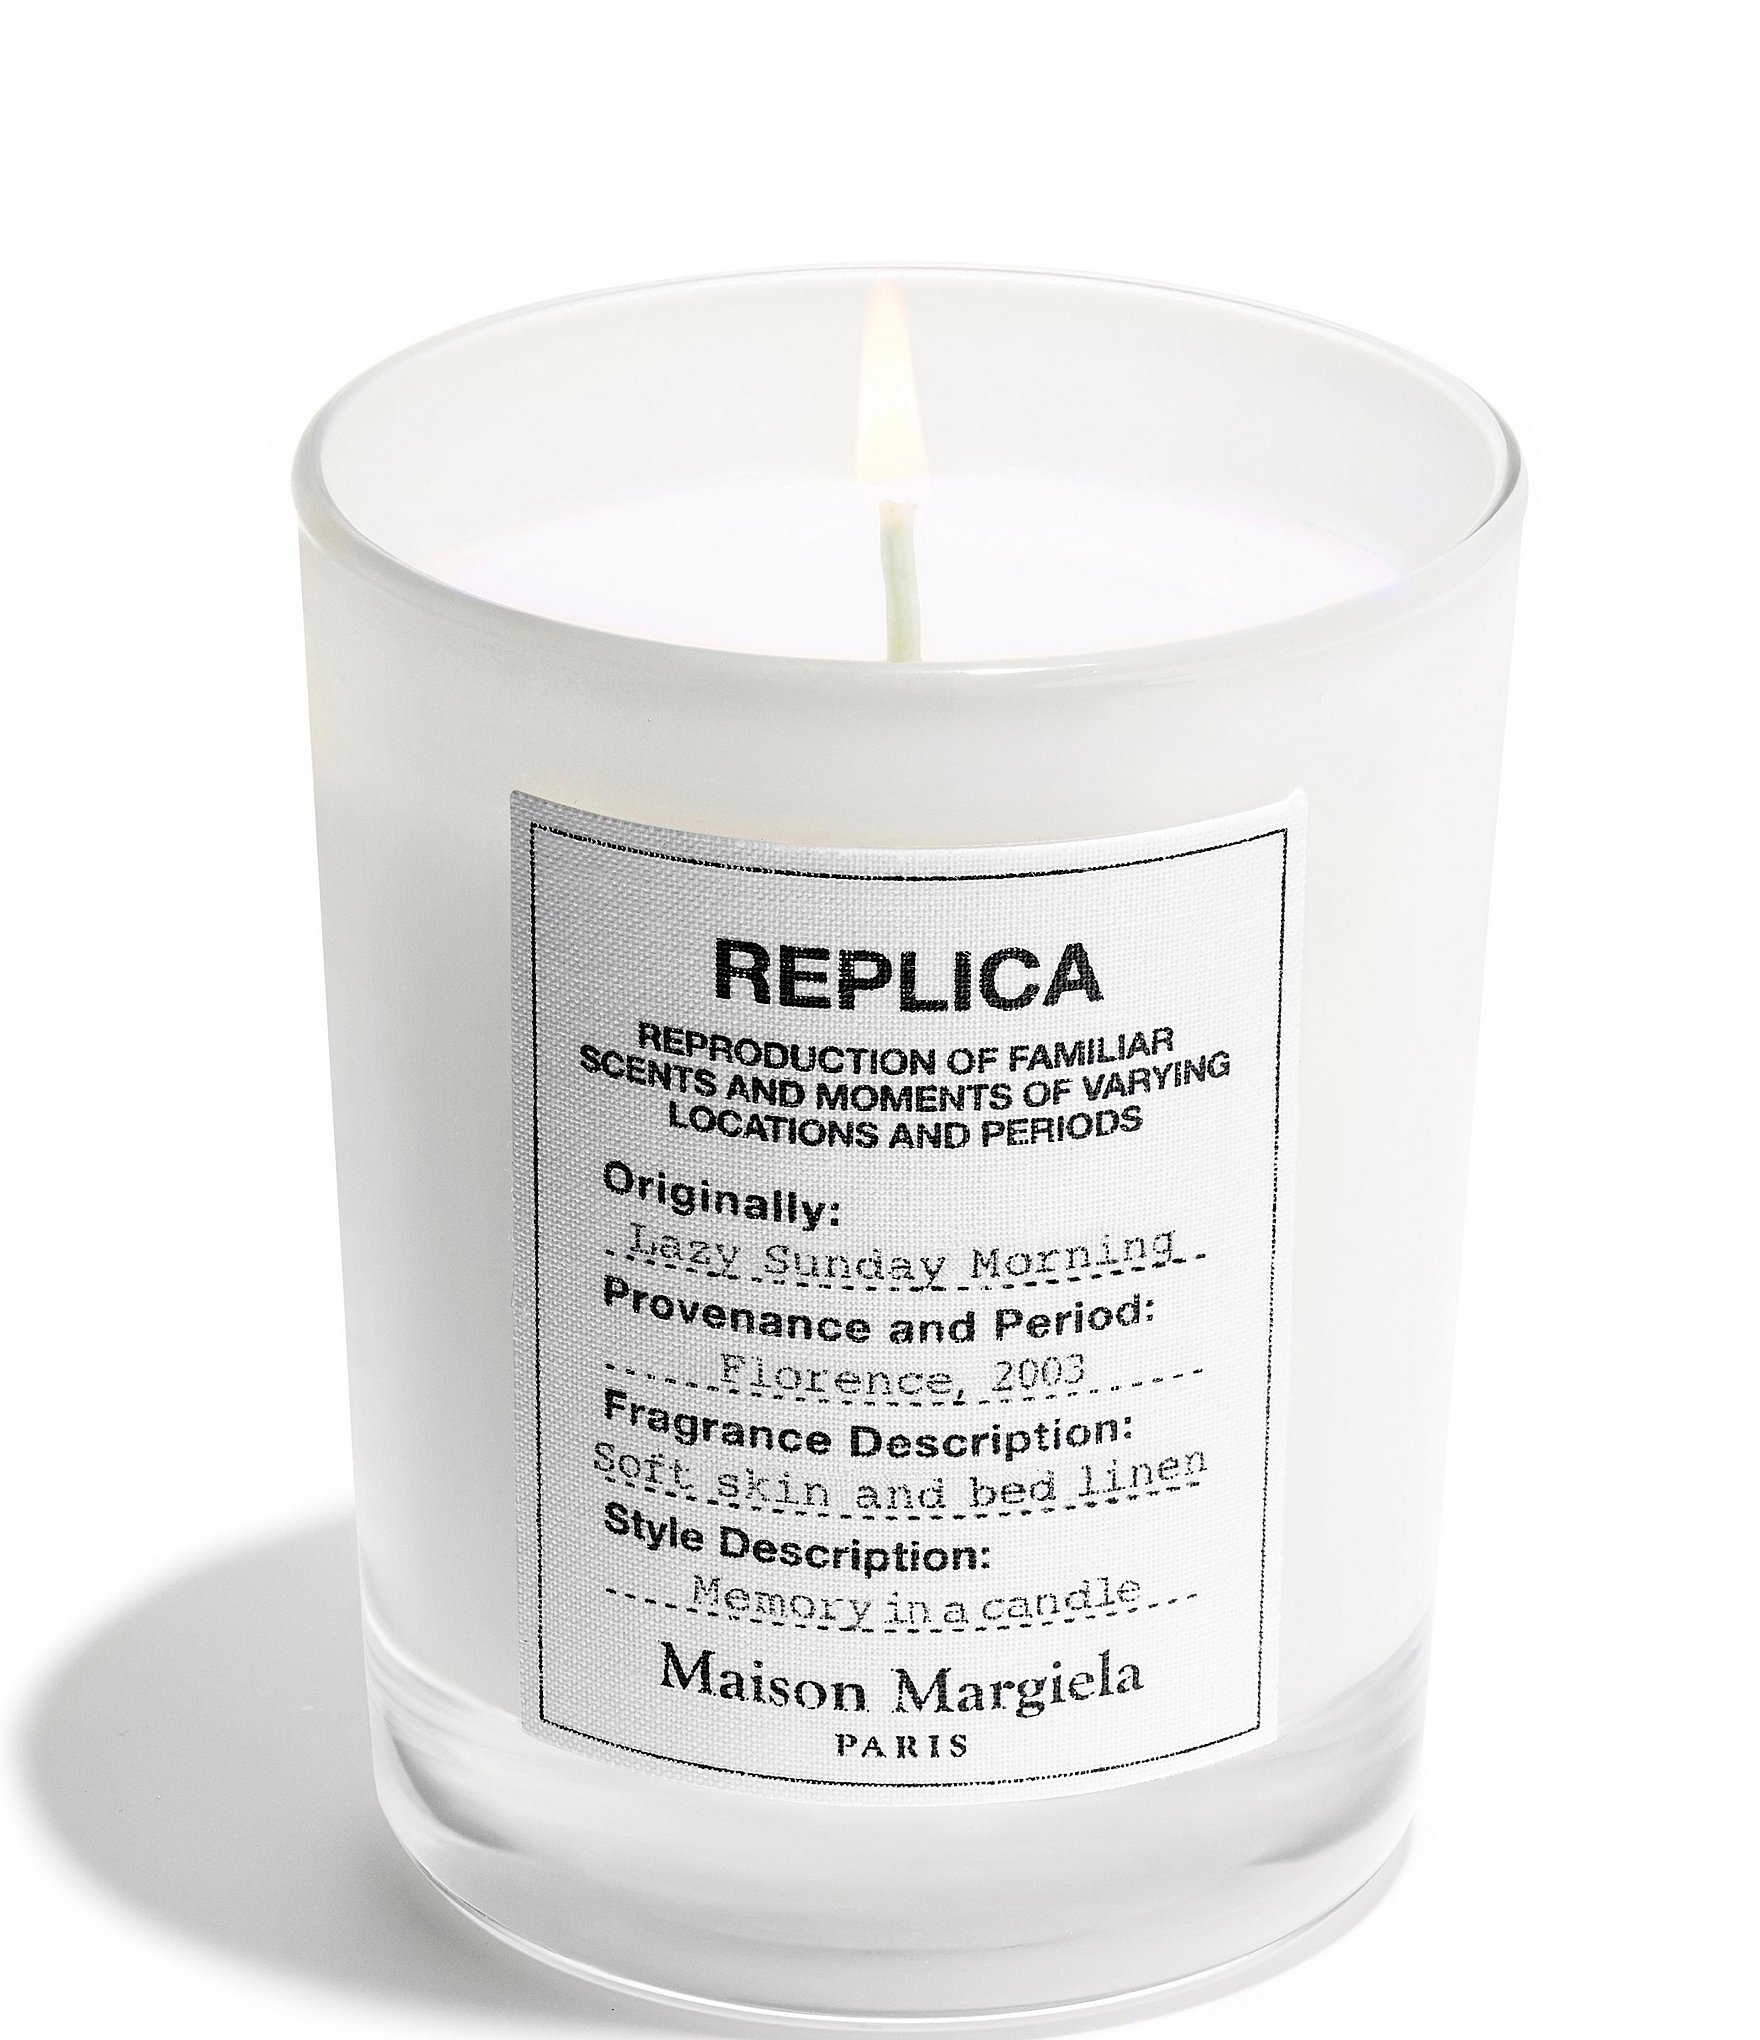 Maison Margiela REPLICA Lazy Sunday Morning Scented Candle, 5.8-oz